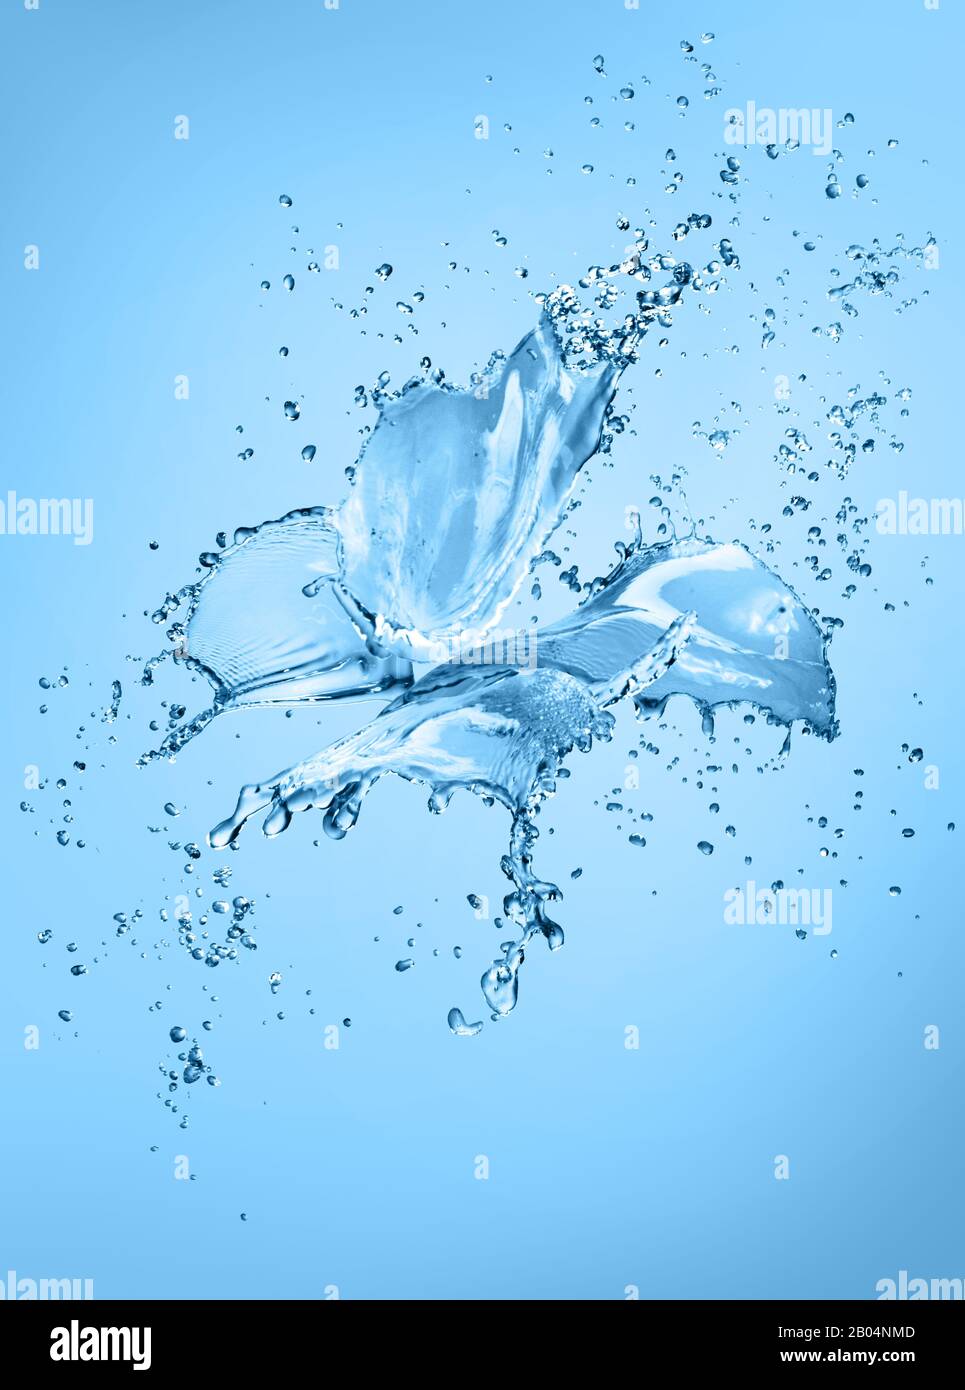 Farfalla realistica fatta di spruzzi di acqua e gocce isolato su sfondo blu Foto Stock